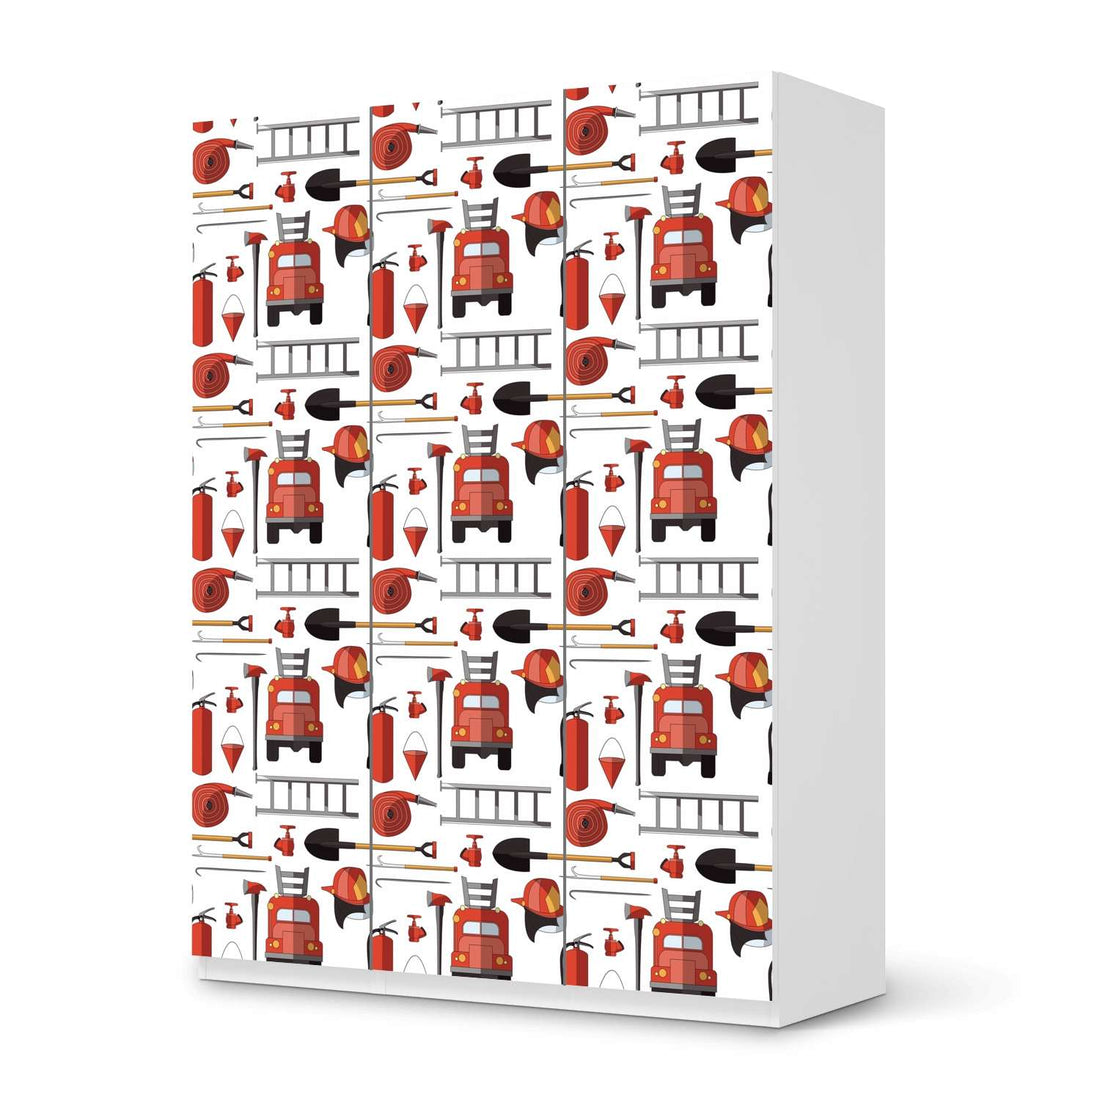 Folie für Möbel Firefighter - IKEA Pax Schrank 201 cm Höhe - 3 Türen - weiss